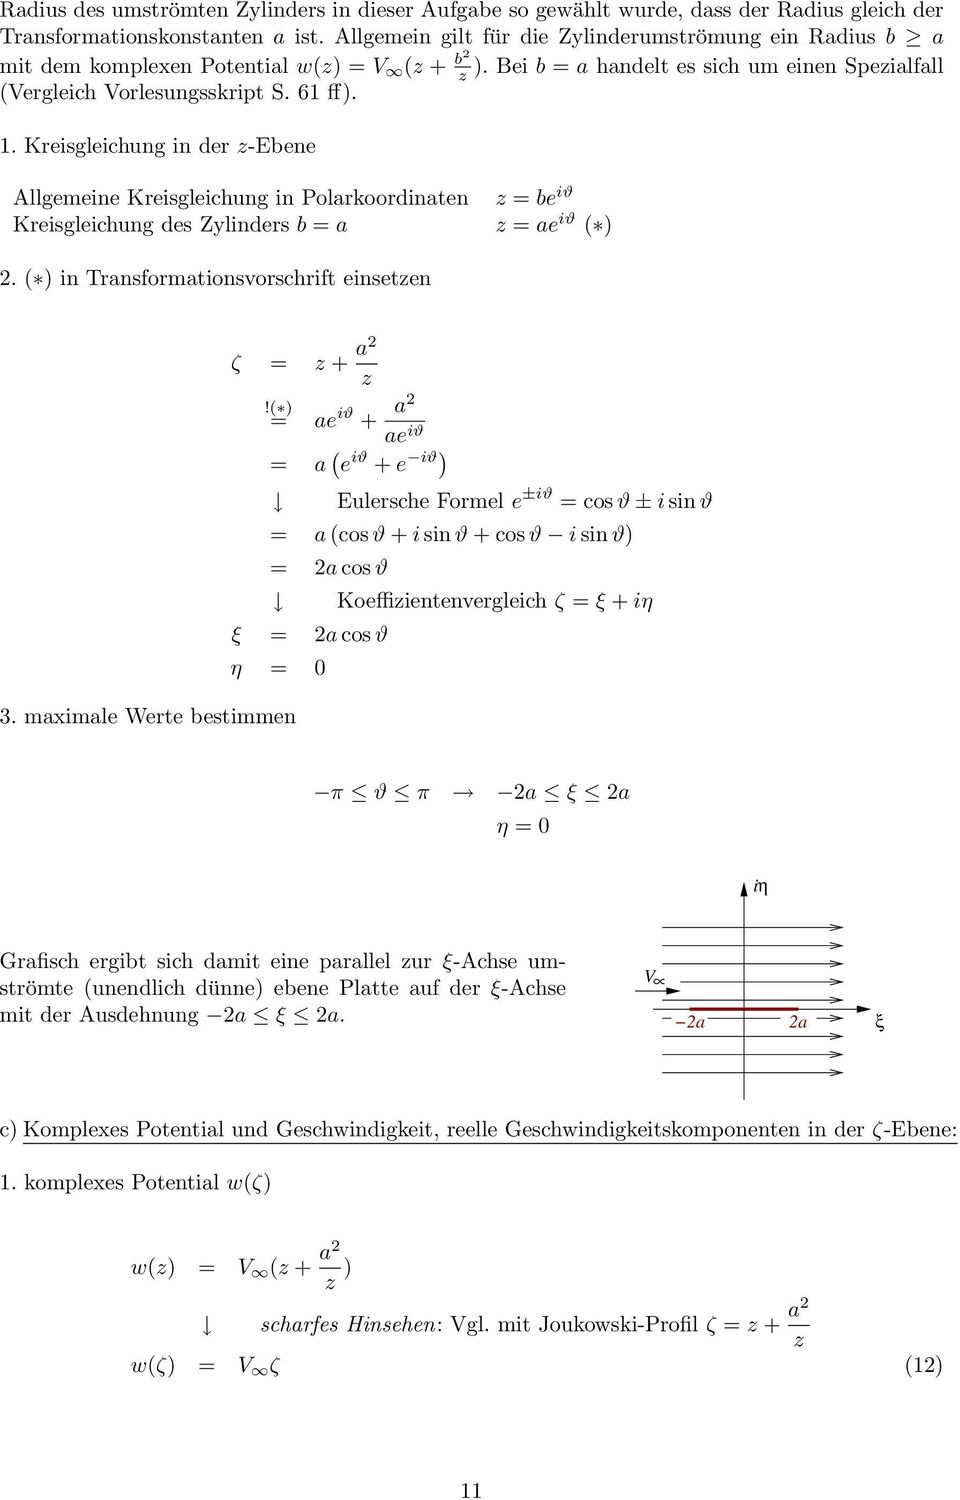 . Keisgleichung in de -Ebene Allgemeine Keisgleichung in Polakoodinaten Keisgleichung des Zylindes b = a = be iϑ = ae iϑ 2. in Tansfomationsvoschift einseten ζ = + a2!